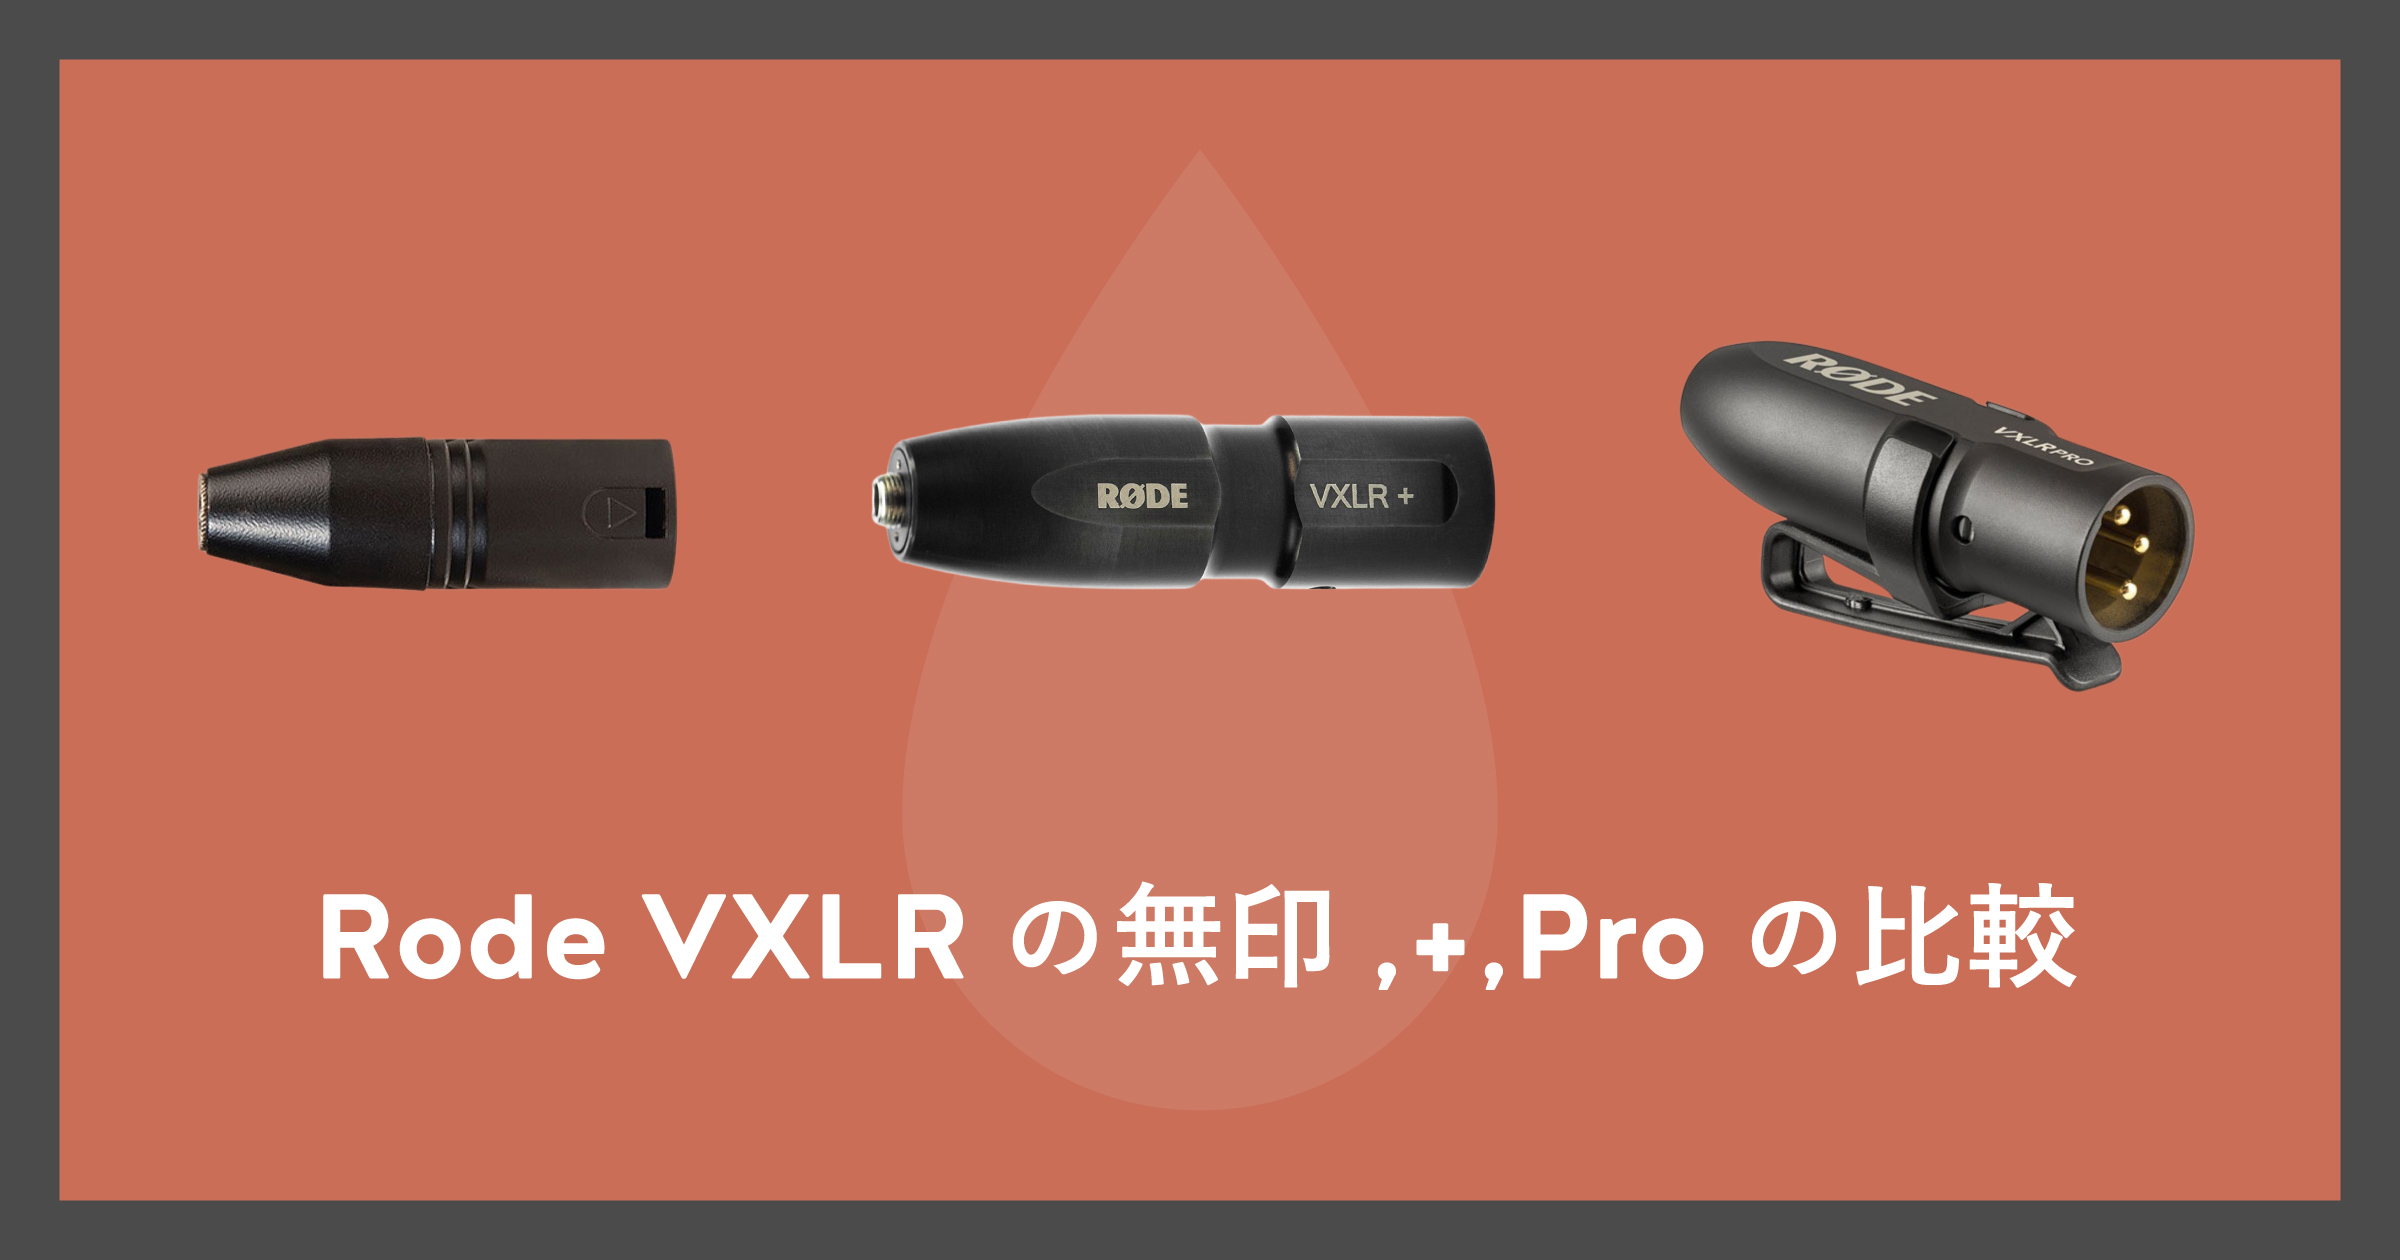 「Rode VXLRの無印,+,Proの比較」のアイキャッチ画像